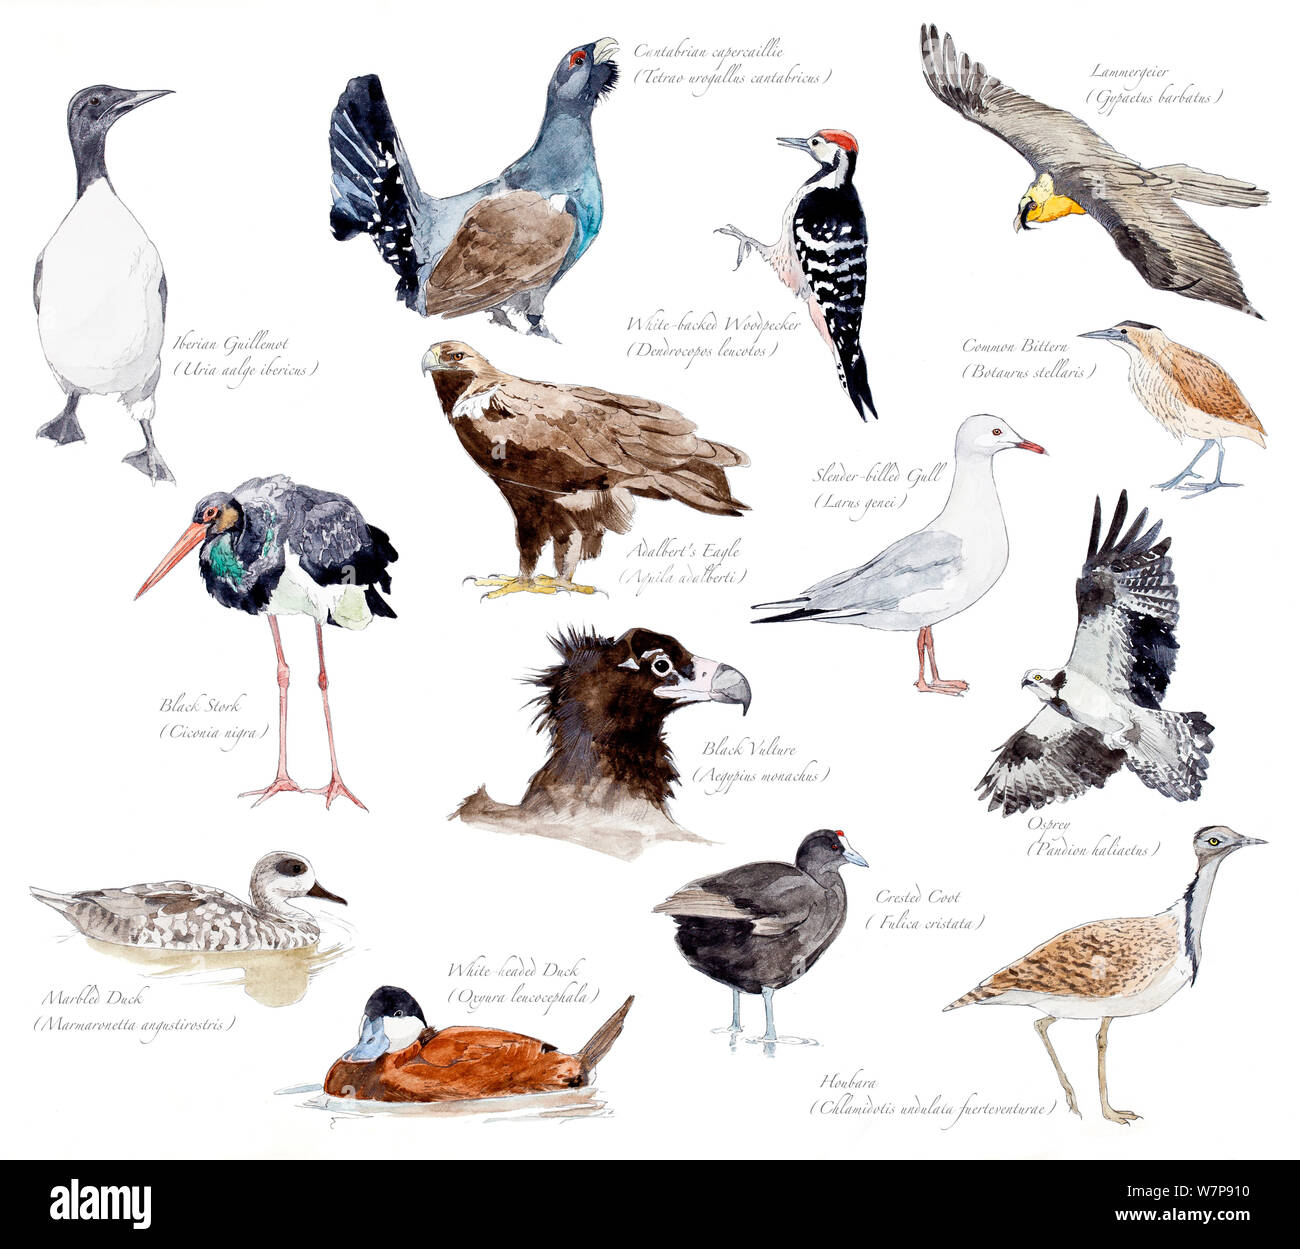 Ilustración de las especies amenazadas de aves de España. Foto de stock